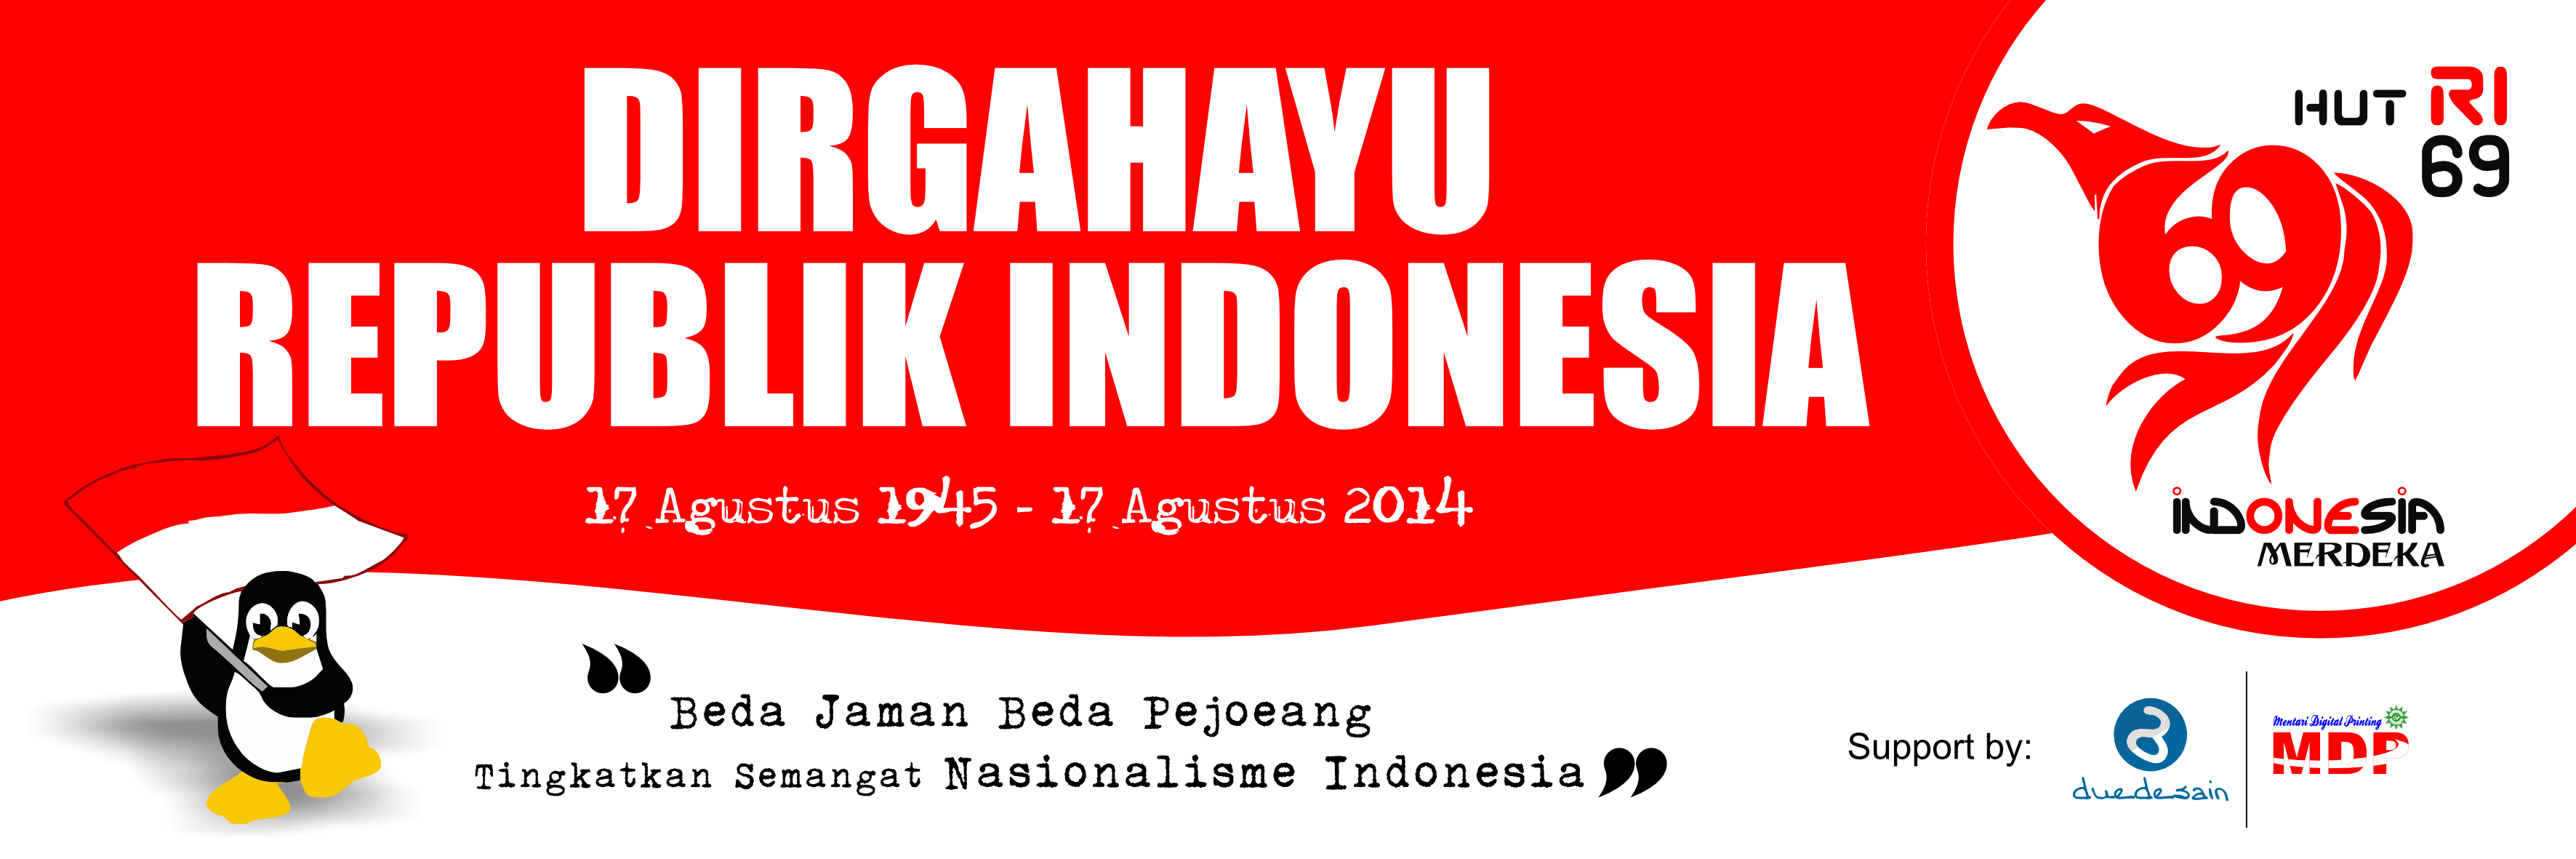 Kemerdekaan Indonesia  hairstylegalleries.com